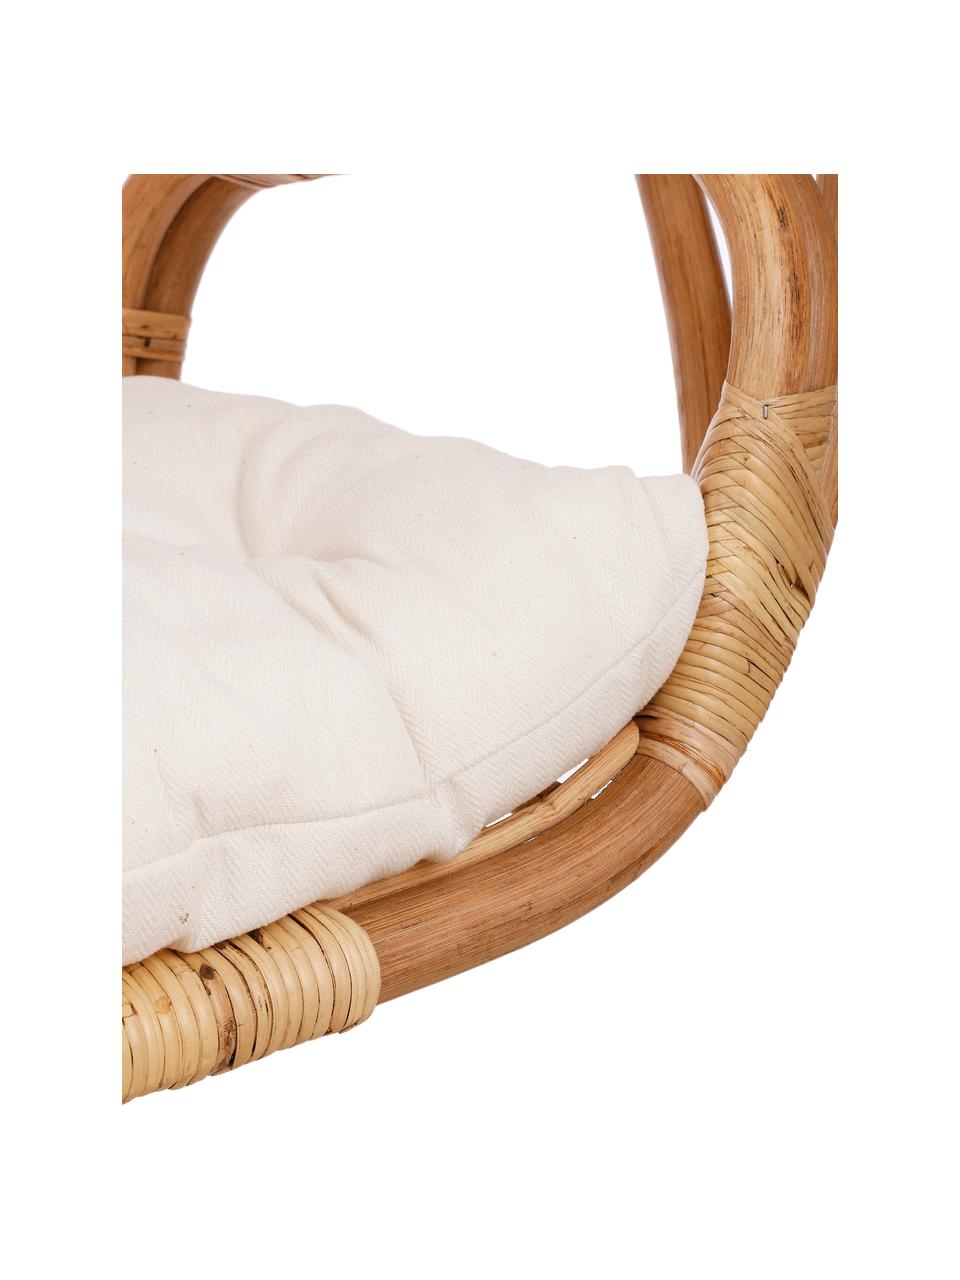 Sedia sospesa in rattan marrone chiaro con cuscino sedia Blanca, Marrone chiaro, bianco, Larg. 91 x Alt. 114 cm